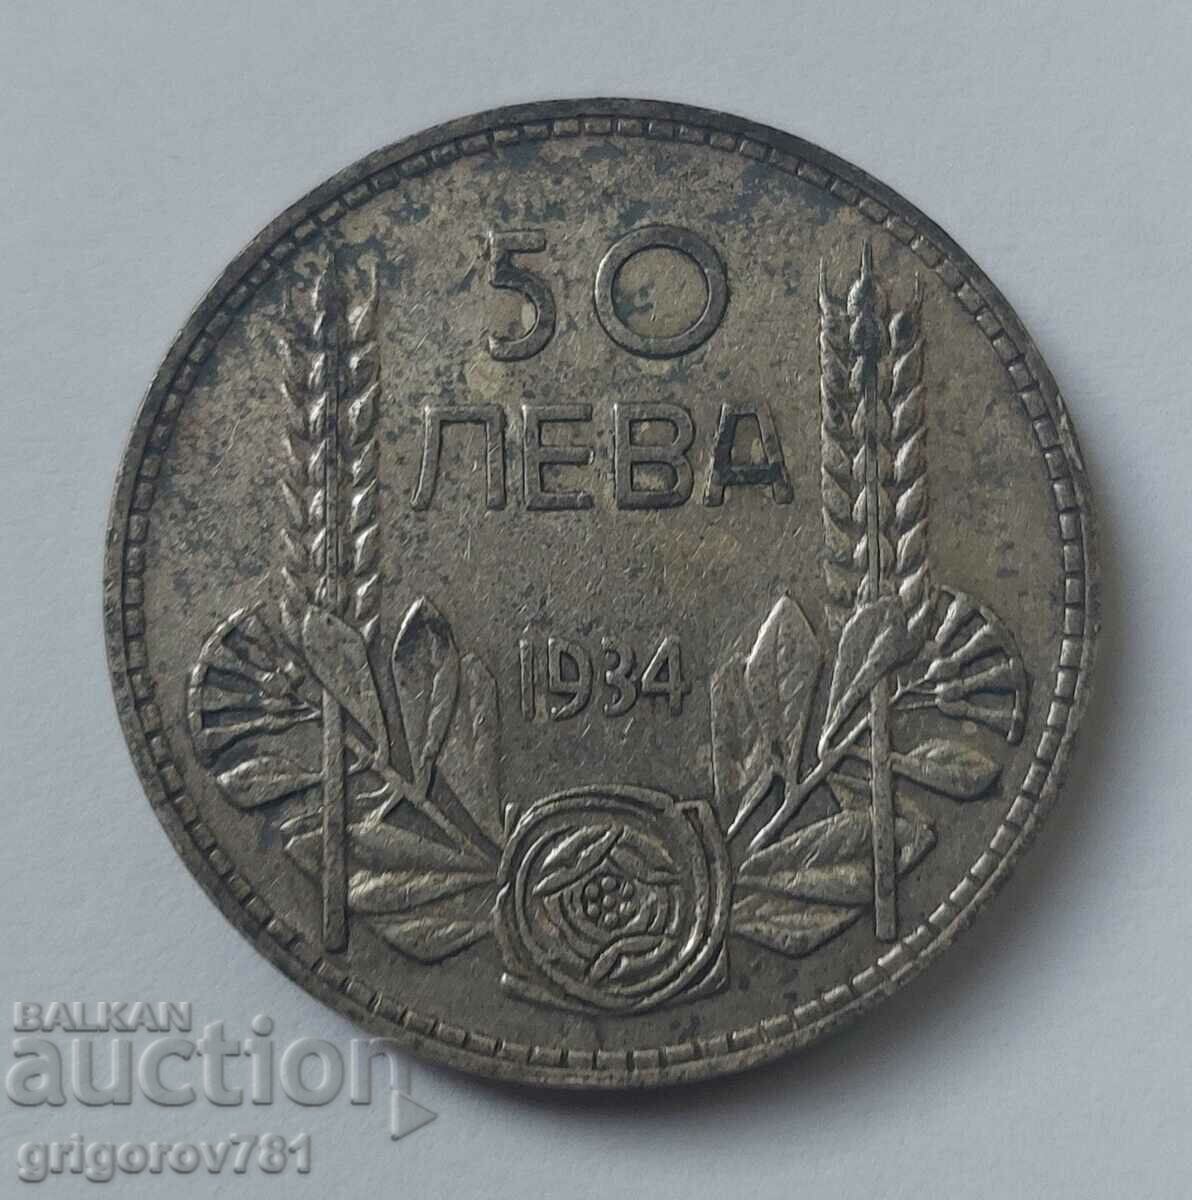 50 leva silver Bulgaria 1934 - silver coin #19